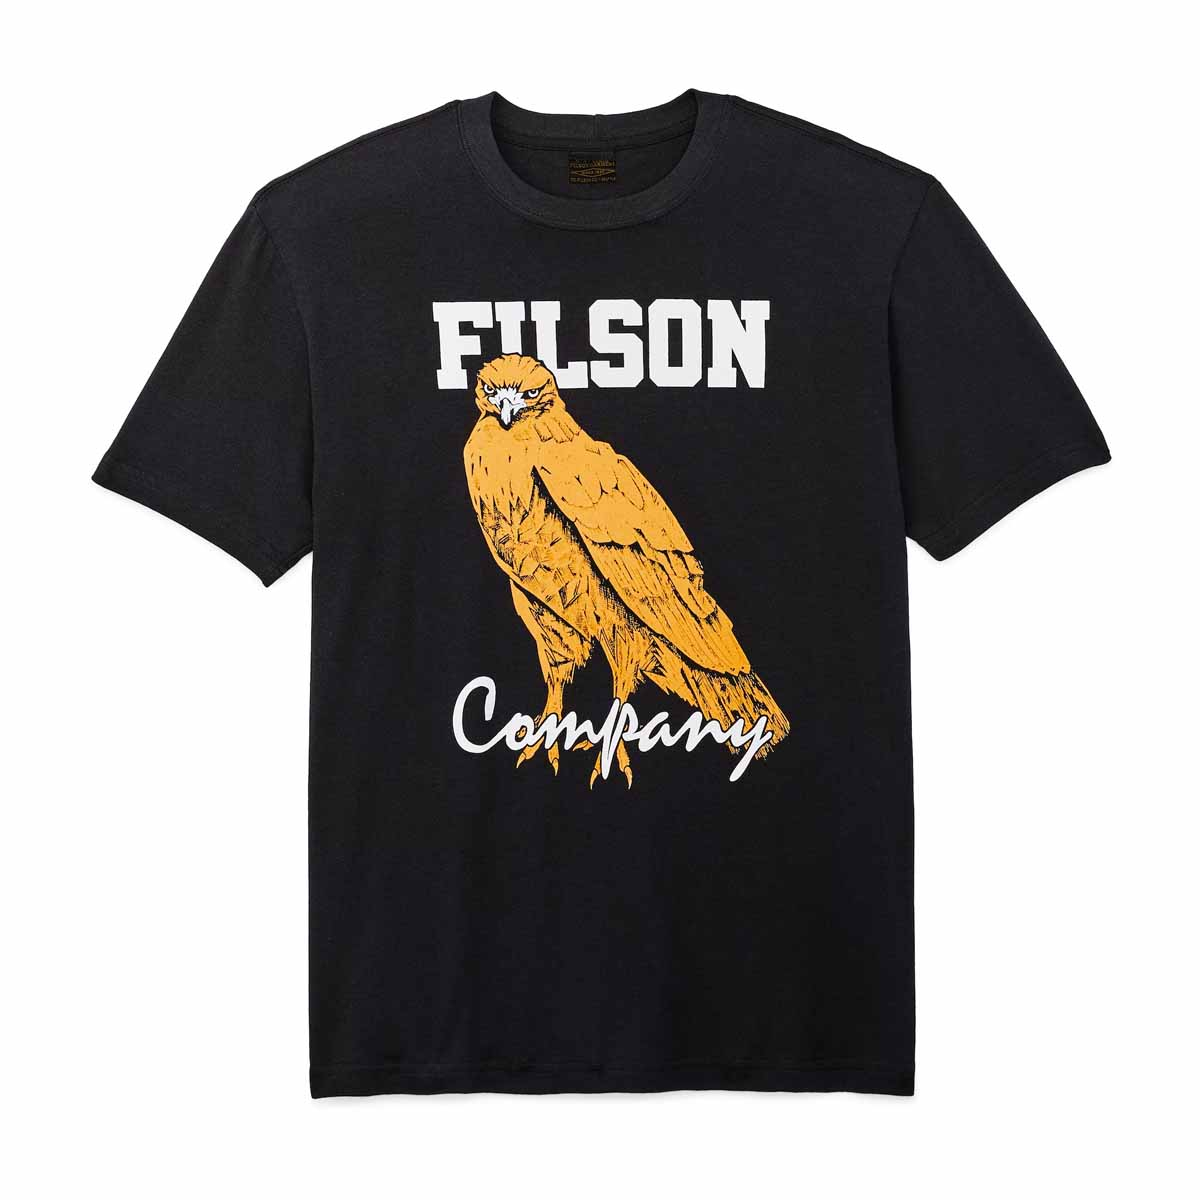 Filson Pioneer Graphic T-Shirt Black/Bird of Grey, robuust shirt dat comfortabel in de hand ligt en zijn structuur behoudt, seizoen na seizoen